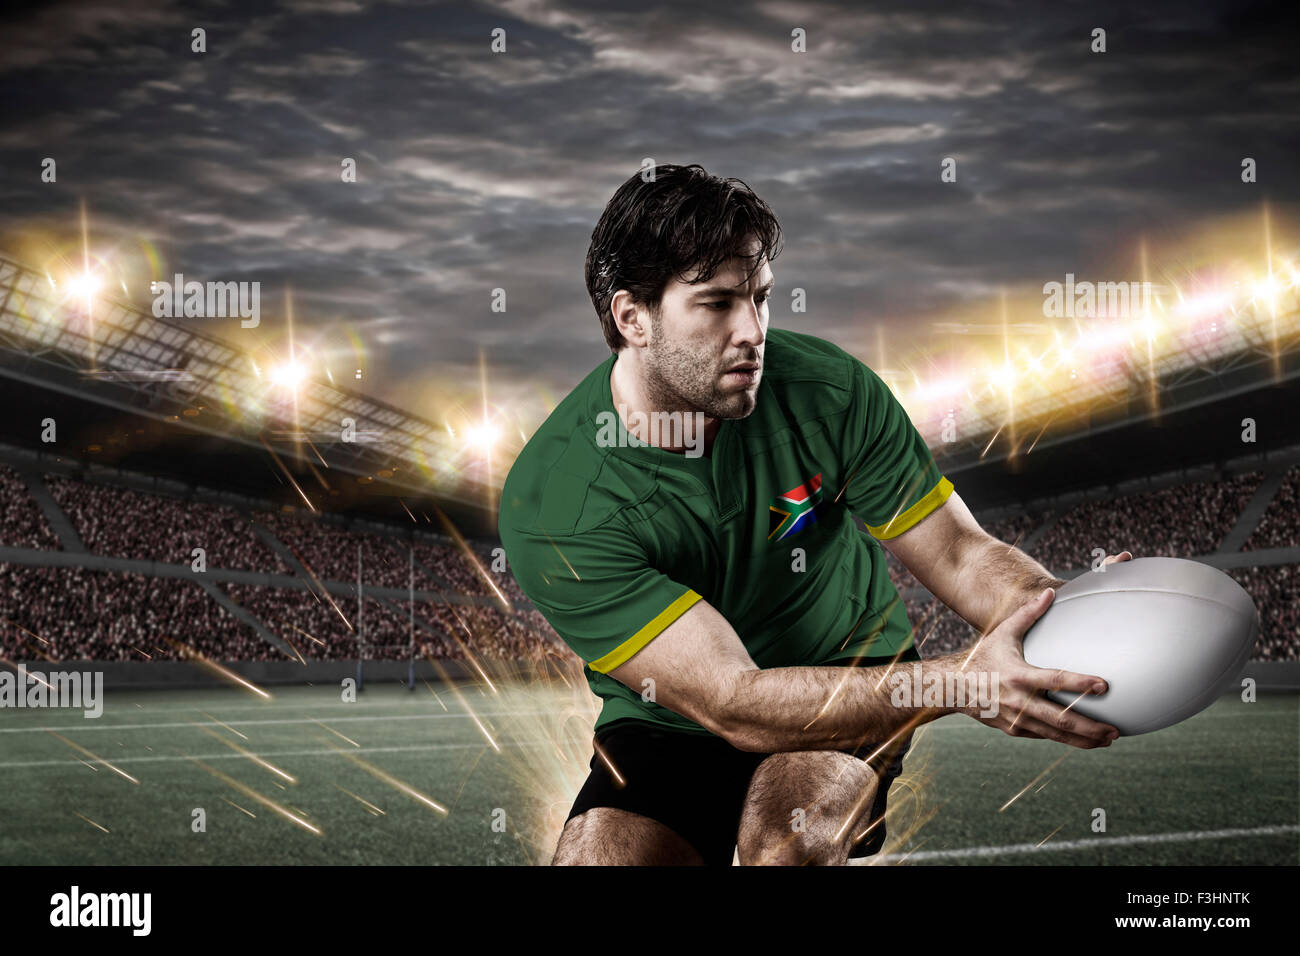 Joueur de rugby sud-africaine, le port d'un uniforme vert et or dans un stade. Banque D'Images